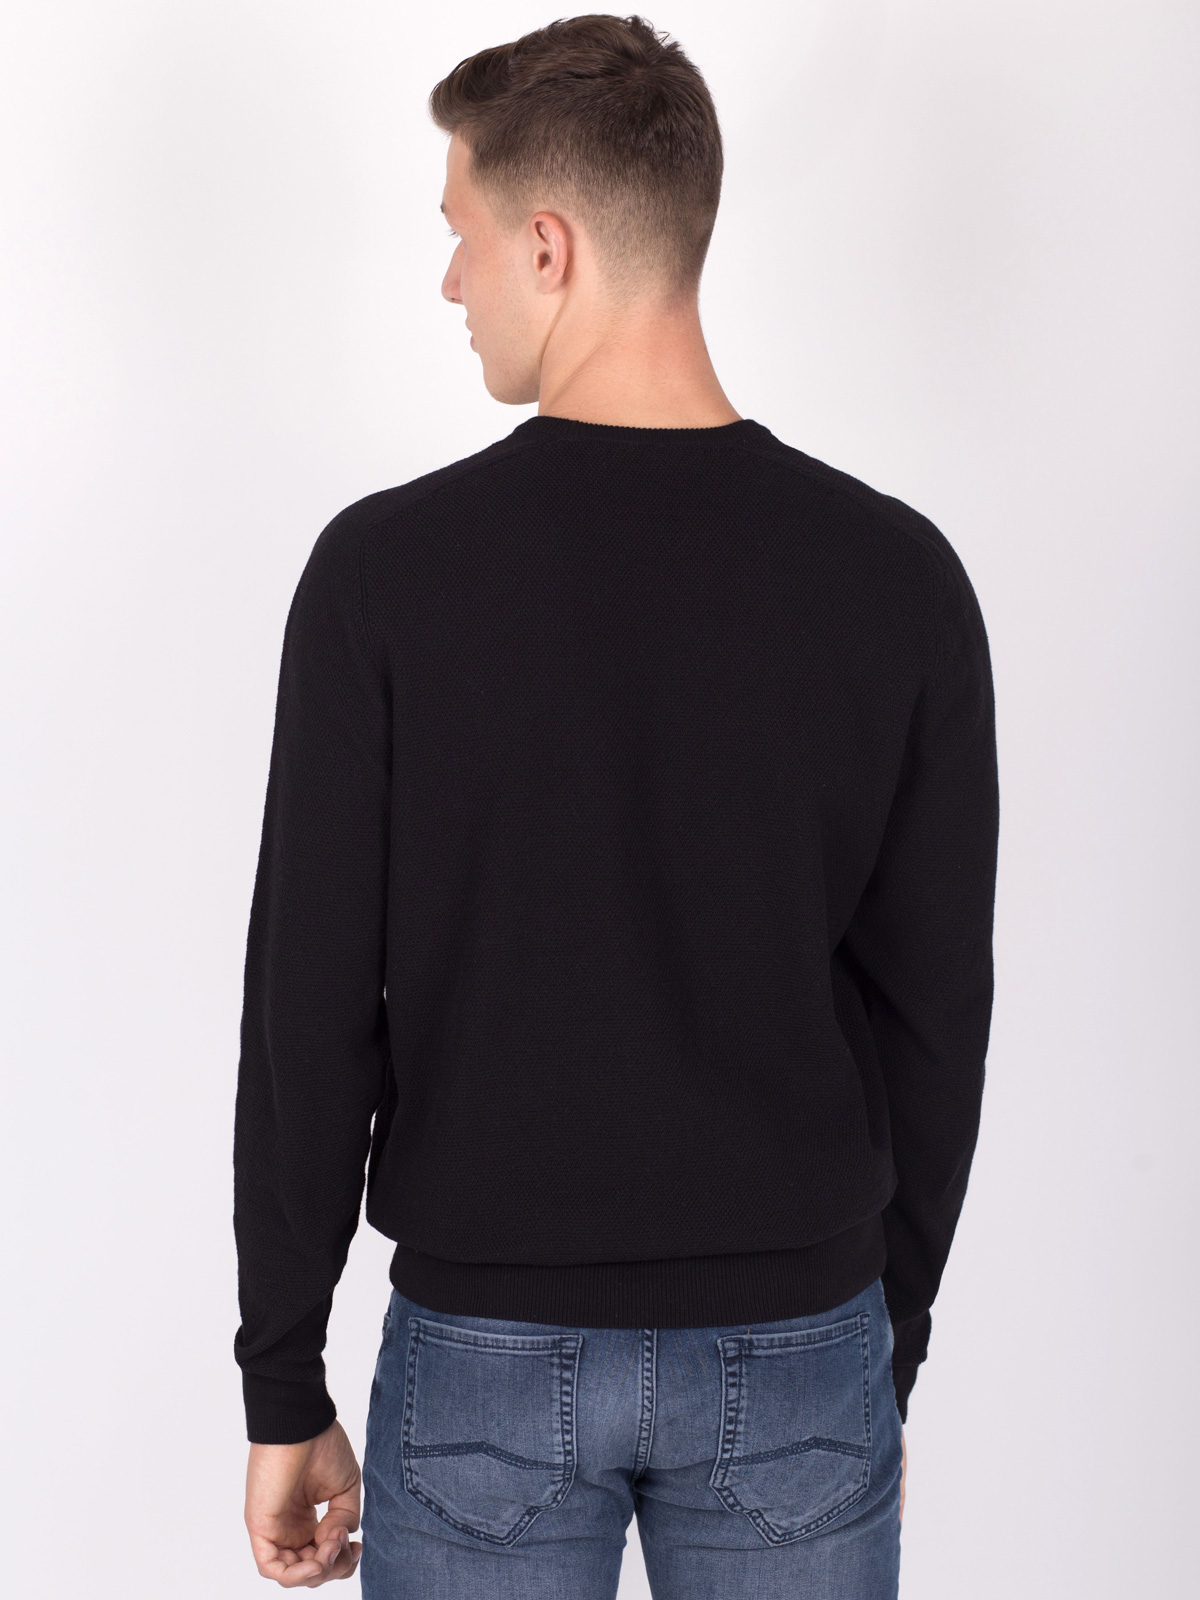 Памучен пуловер в черно - 35285 29.00 лв img4